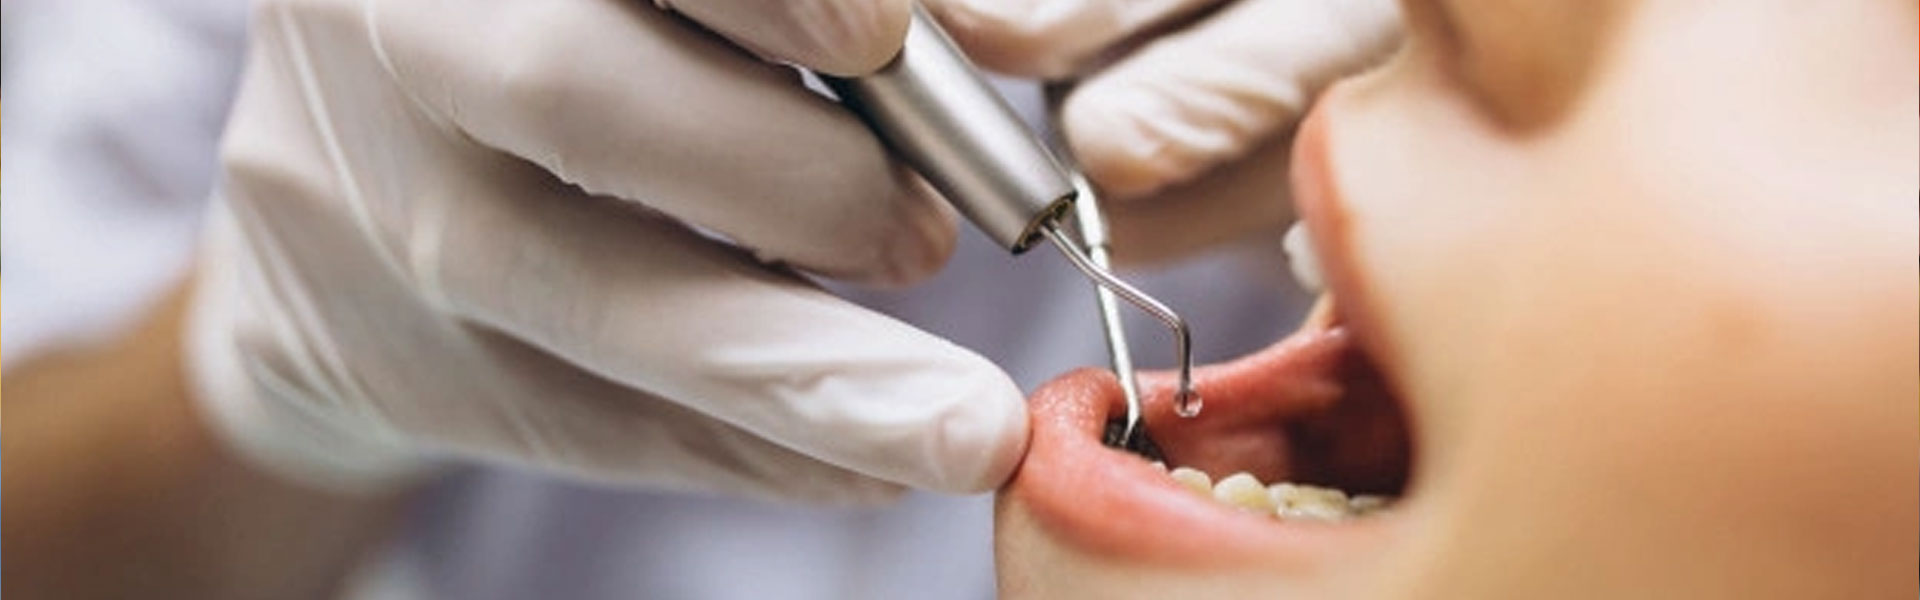 Odontología restauradora - Clínica dental Brasilocho - Clínica dental Cádiz - Odontología - Dentistas en Cádiz